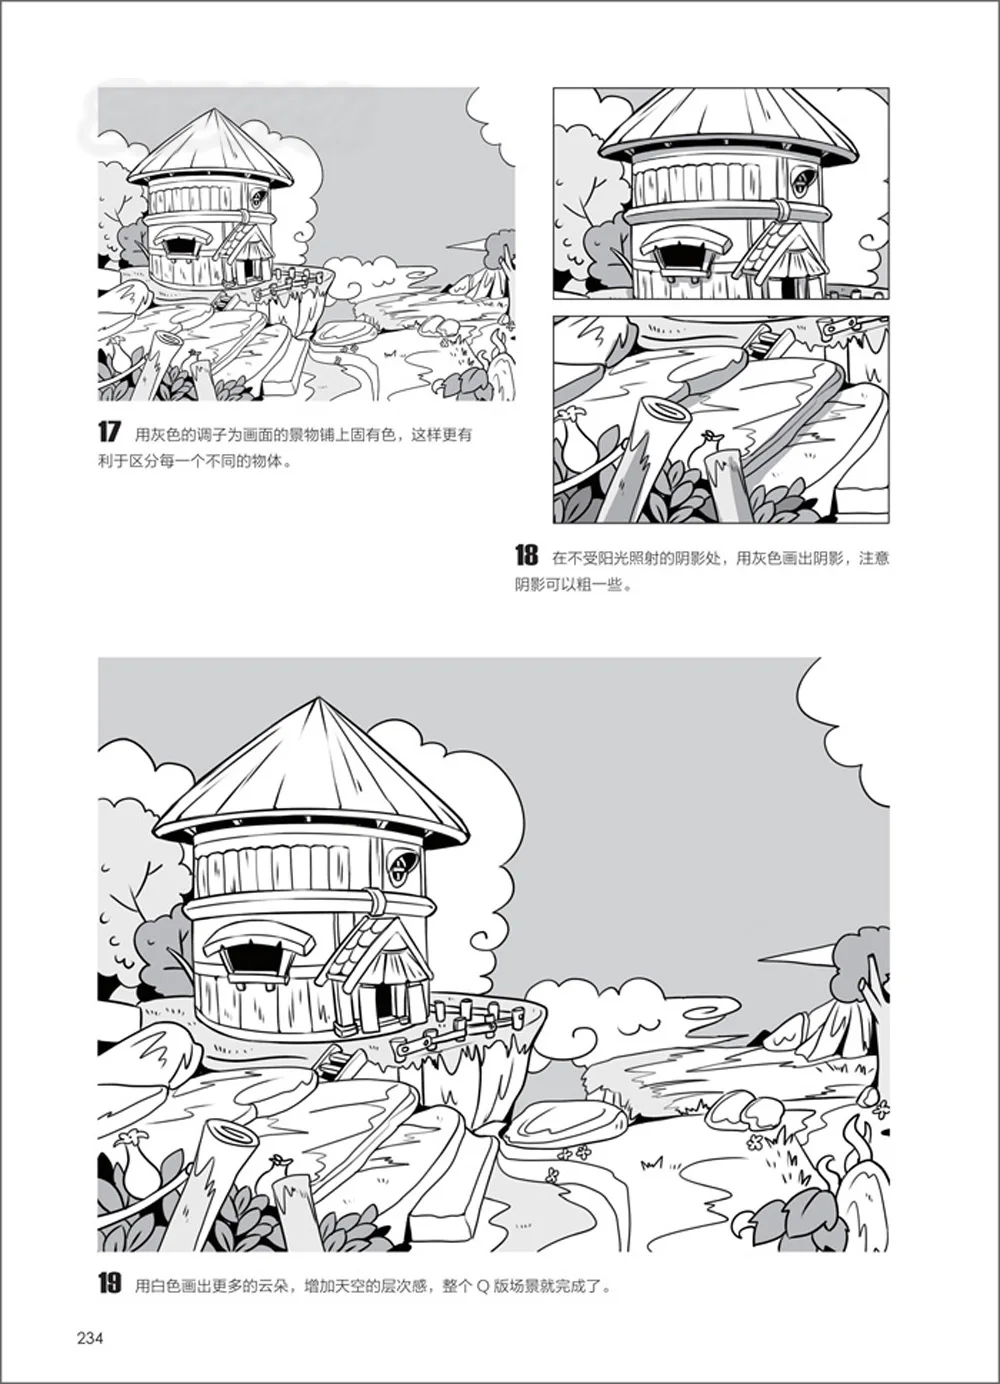 Cina Komik Sketsa Gambar Garis Buku Dari Pemula Sampai Ahli Belajar